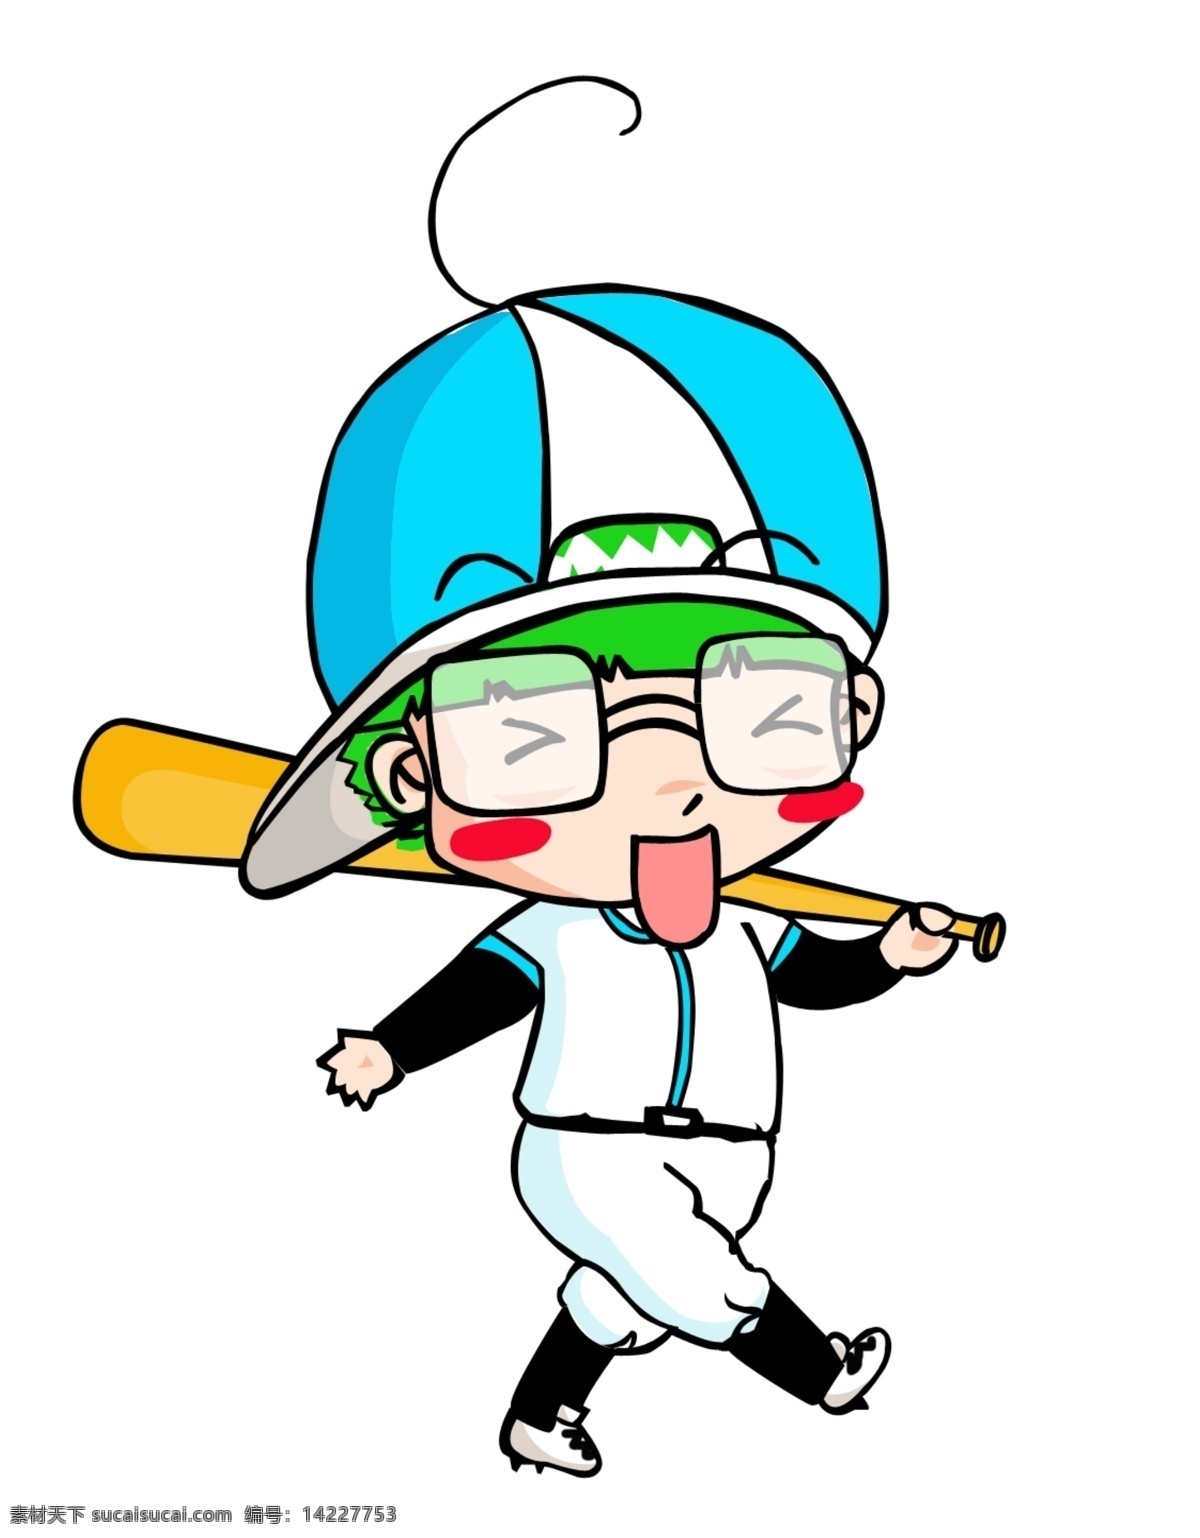 棒球造型 儿童漫画 漫画儿童 q版棒球小孩 漫画 儿童 棒球 运动 原创 造型 可爱 人物 分层 源文件